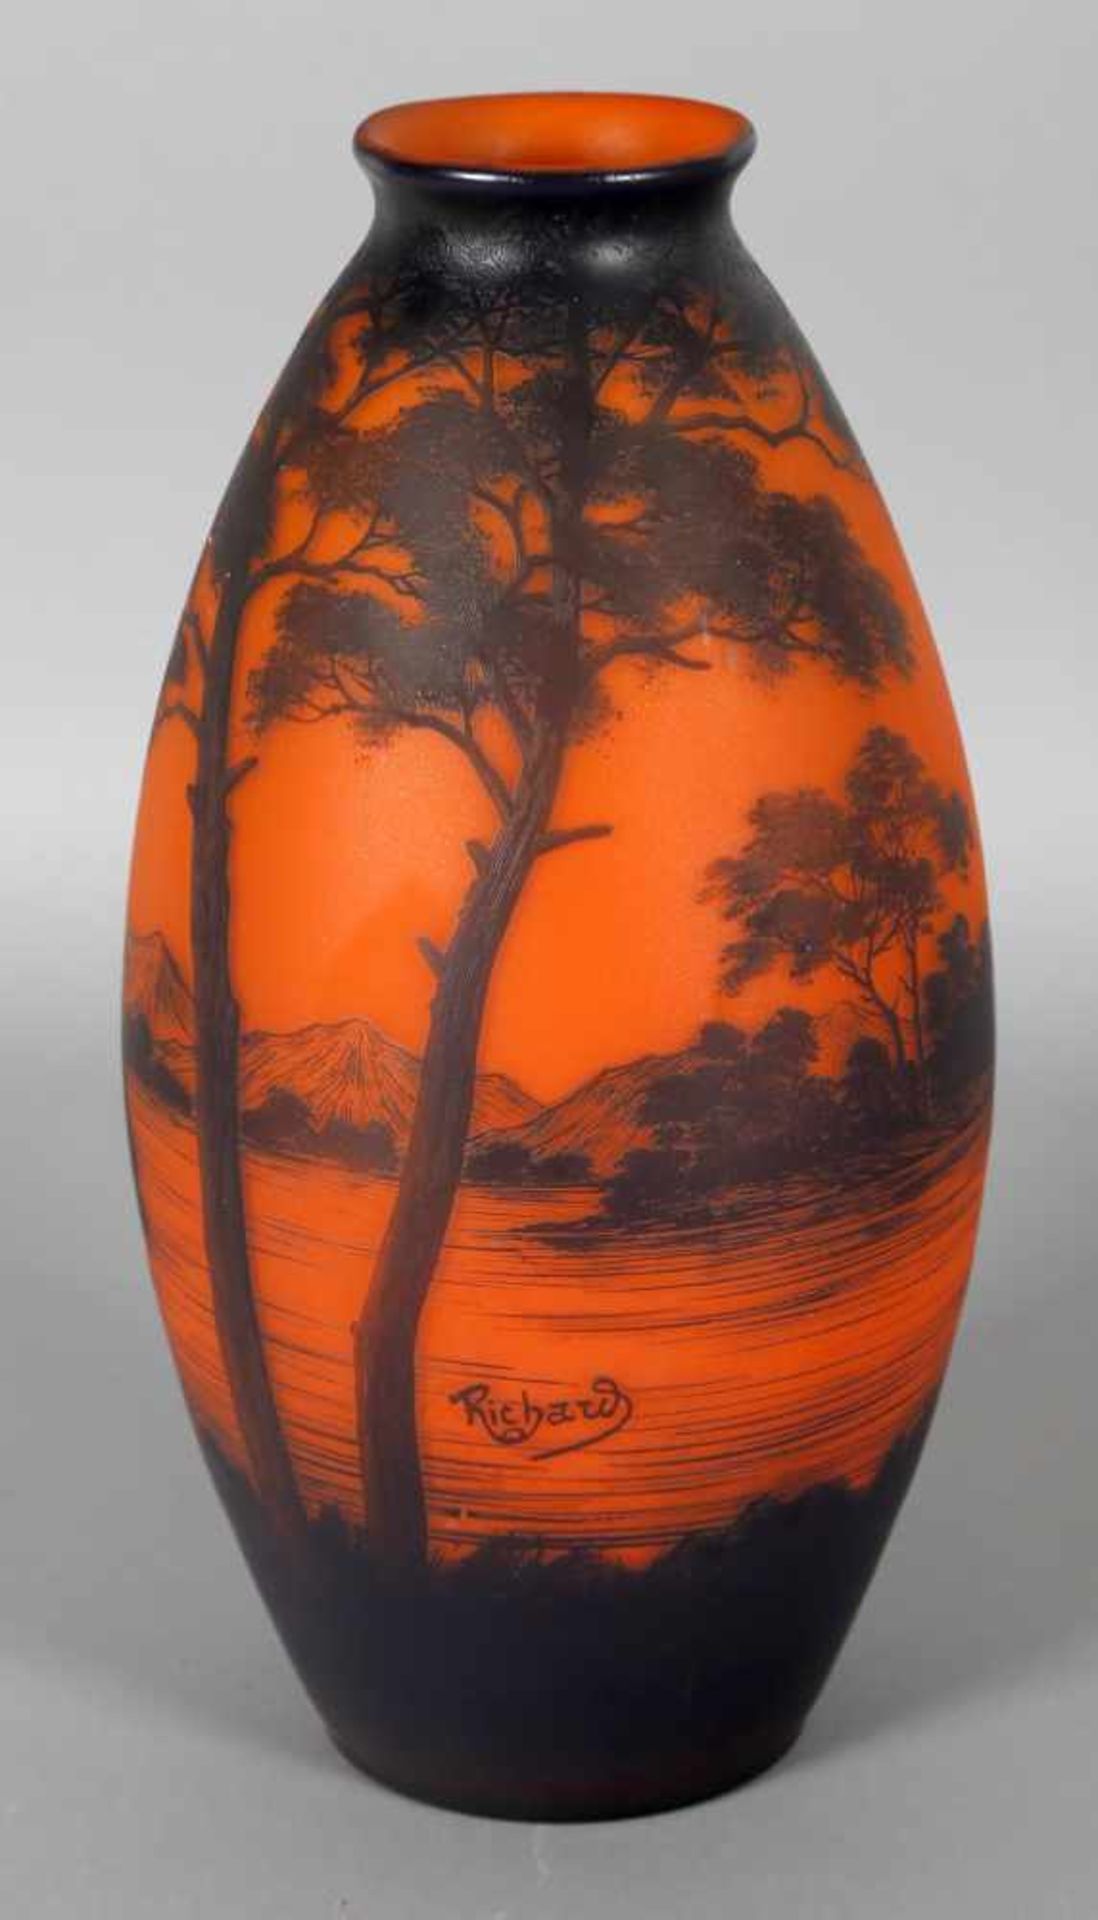 Große Richard-Vase in Balusterform mit weiter Donaulandschaft, um 1920 - Bild 2 aus 2